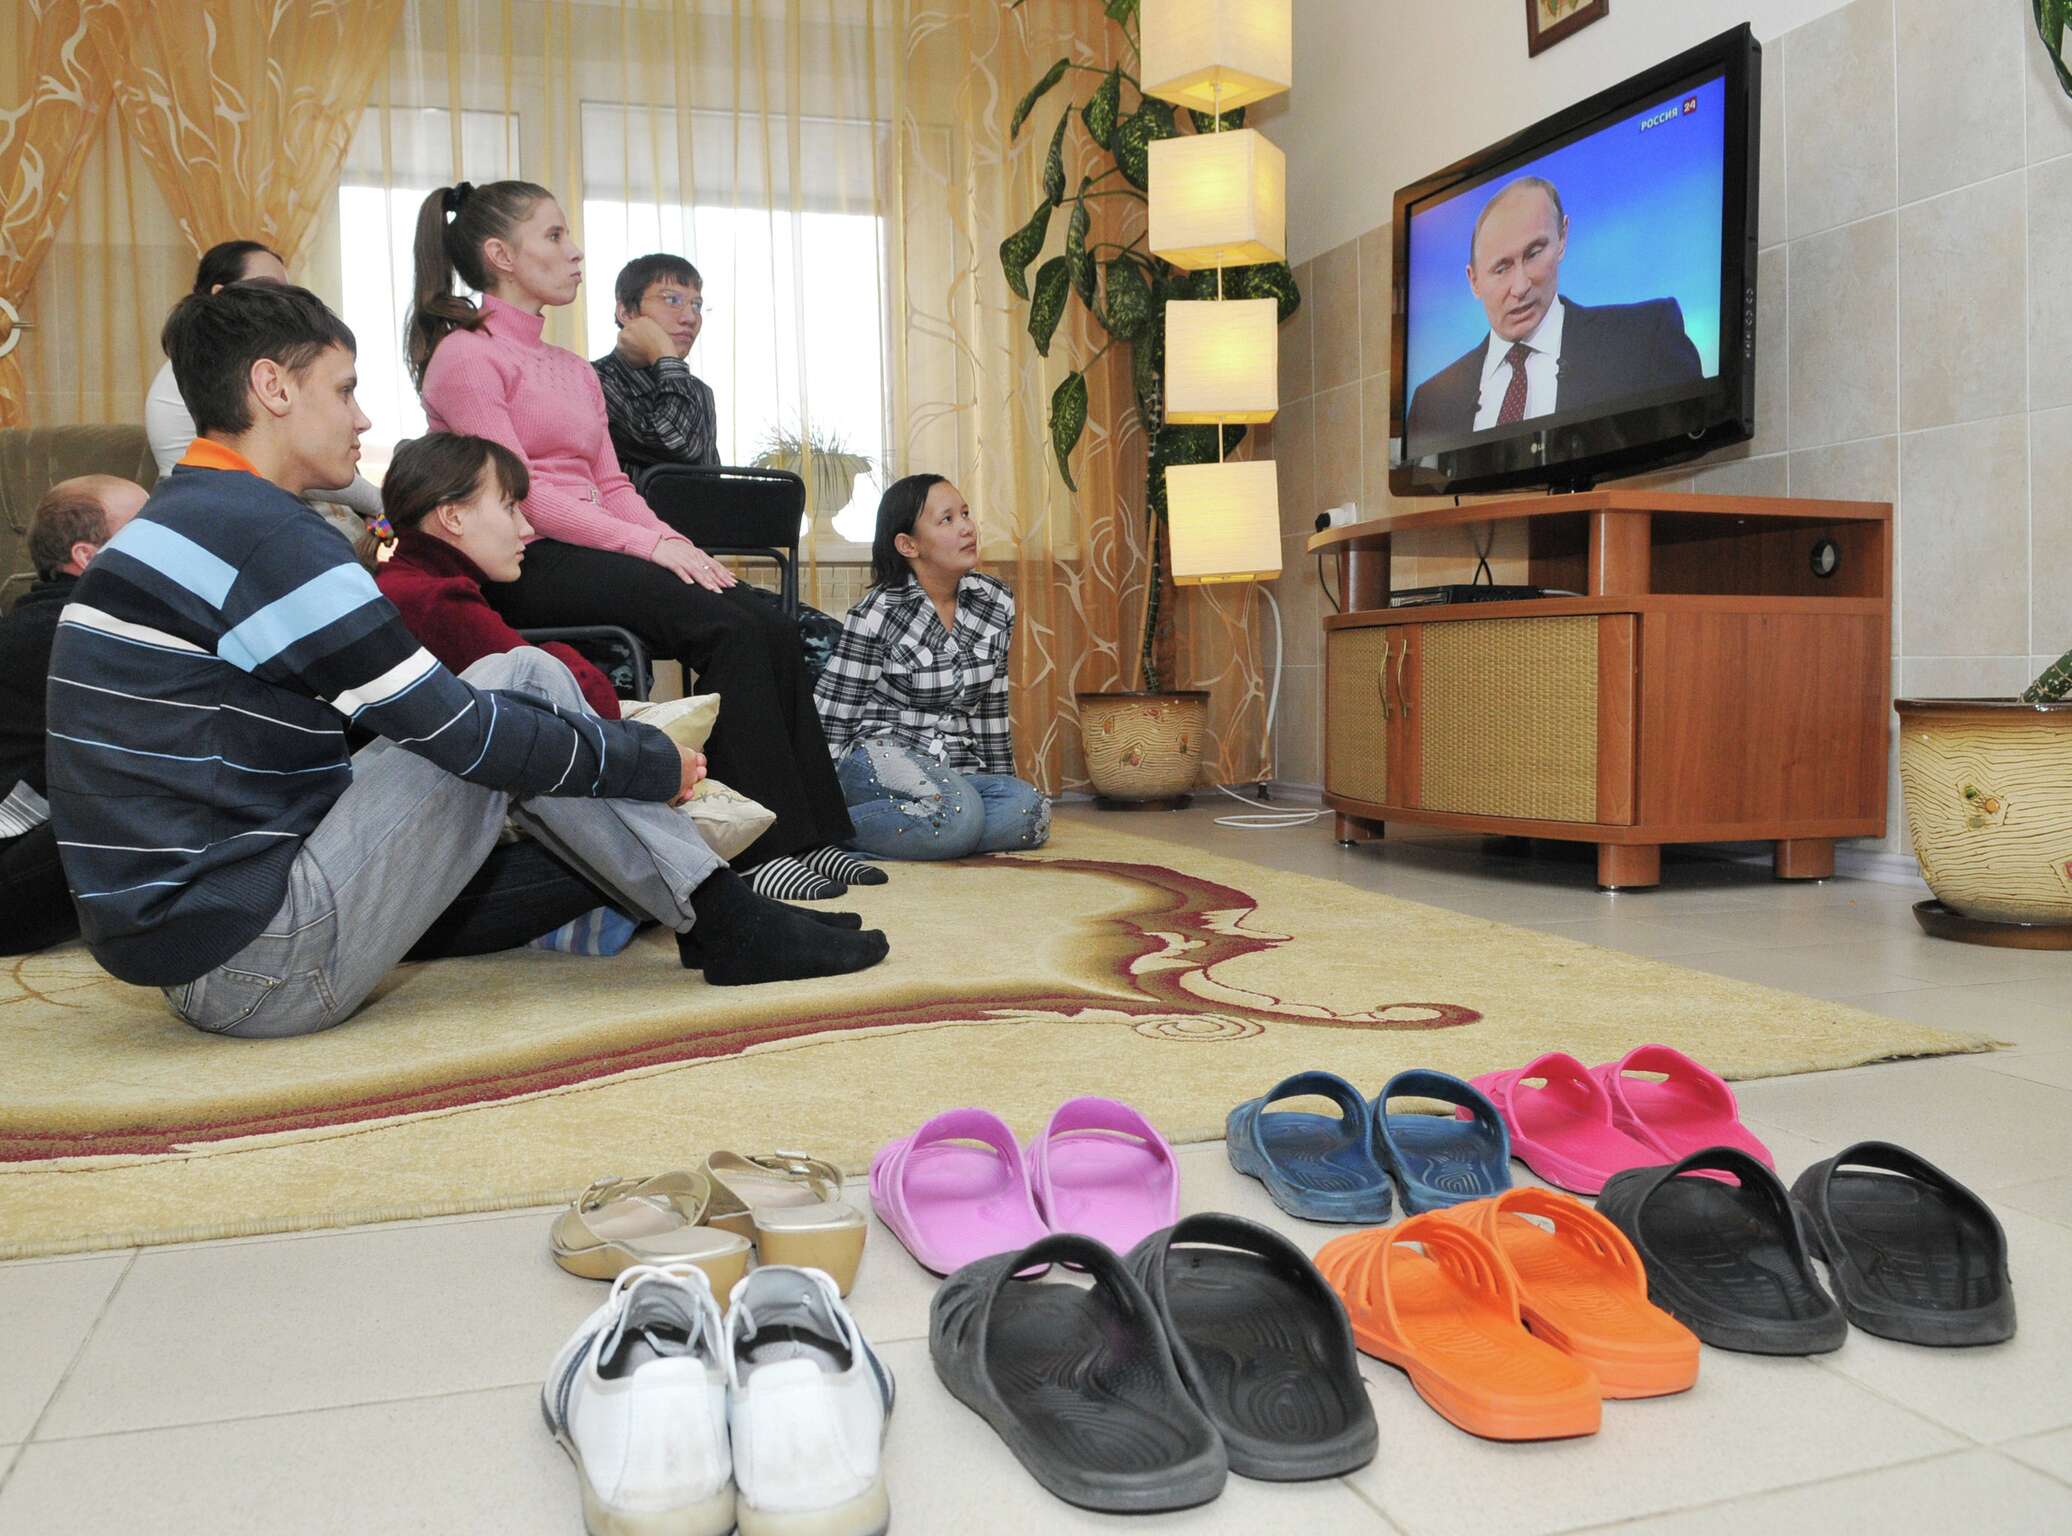 Включи новости 25. Семья у телевизора. Российская семья у телевизора. Семья смотрит телевизор. Россияне у телевизора.